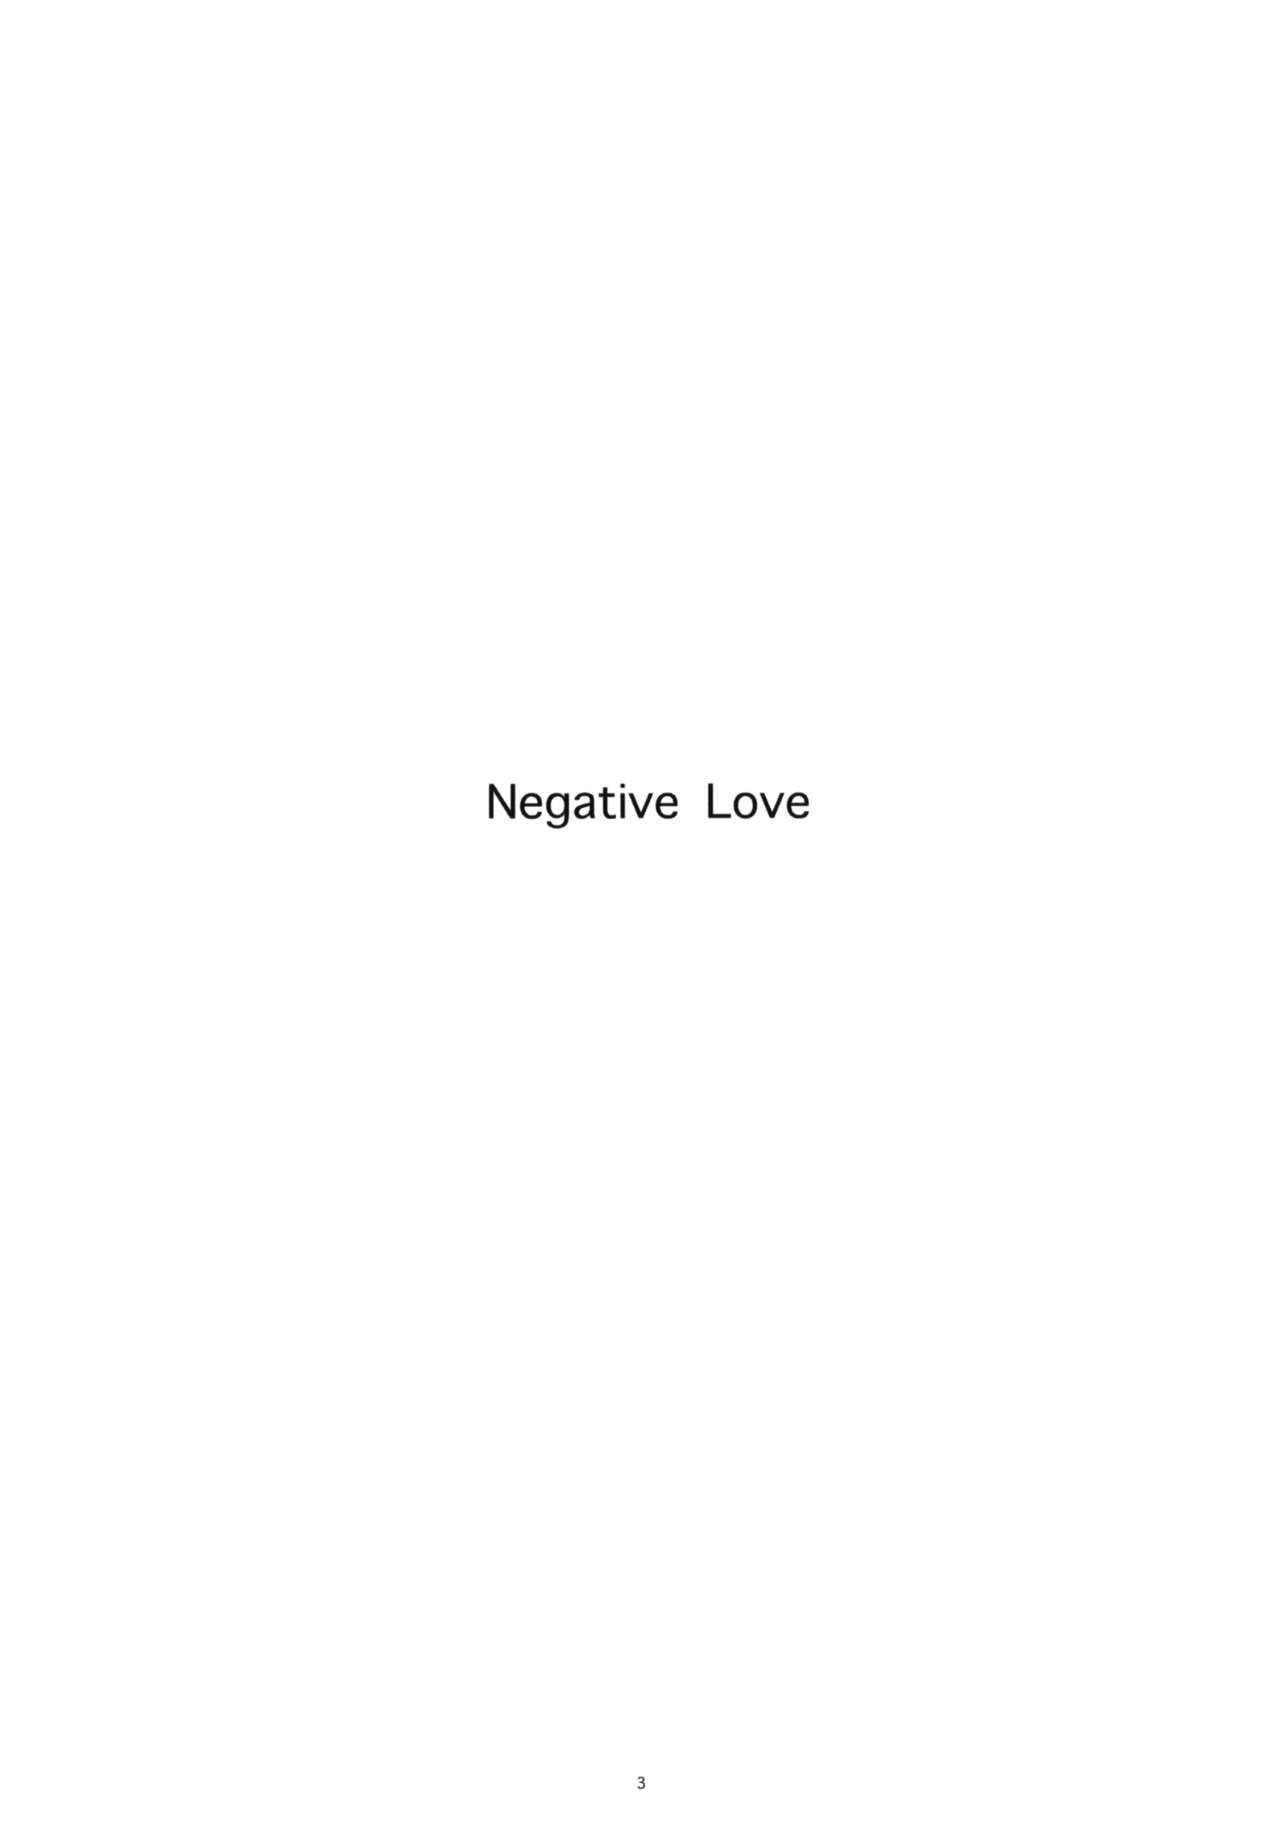 (C79) [Kansai Orange (Arai Kei)] Negative Love 1/3 (Love Plus) (C79) [関西オレンジ (荒井啓)] Negative Love 1／3 (ラブプラス)